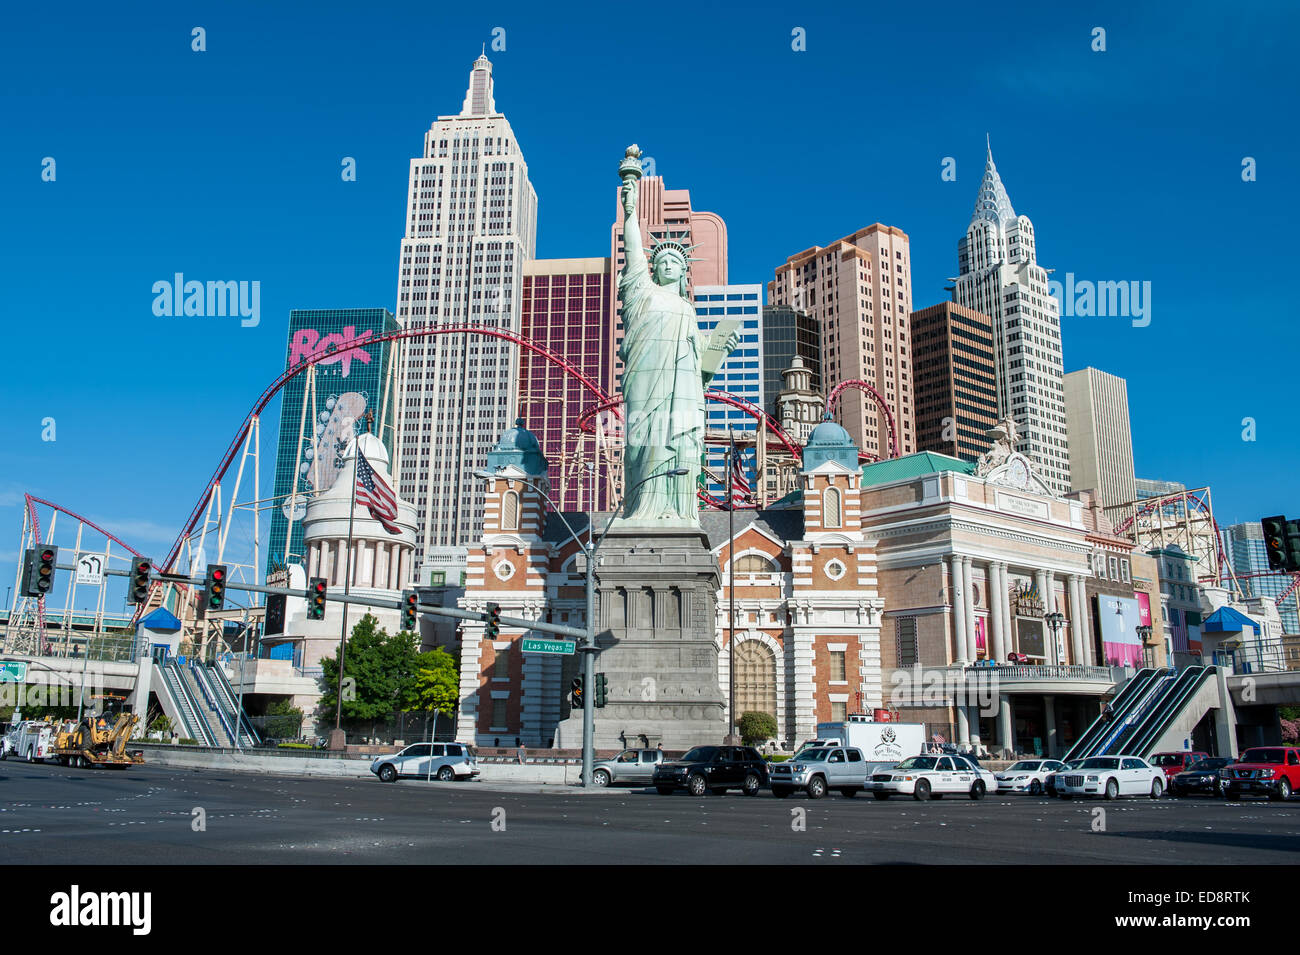 La parte sur del Boulevard Las Vegas con el Hotel New York New York. Foto de stock